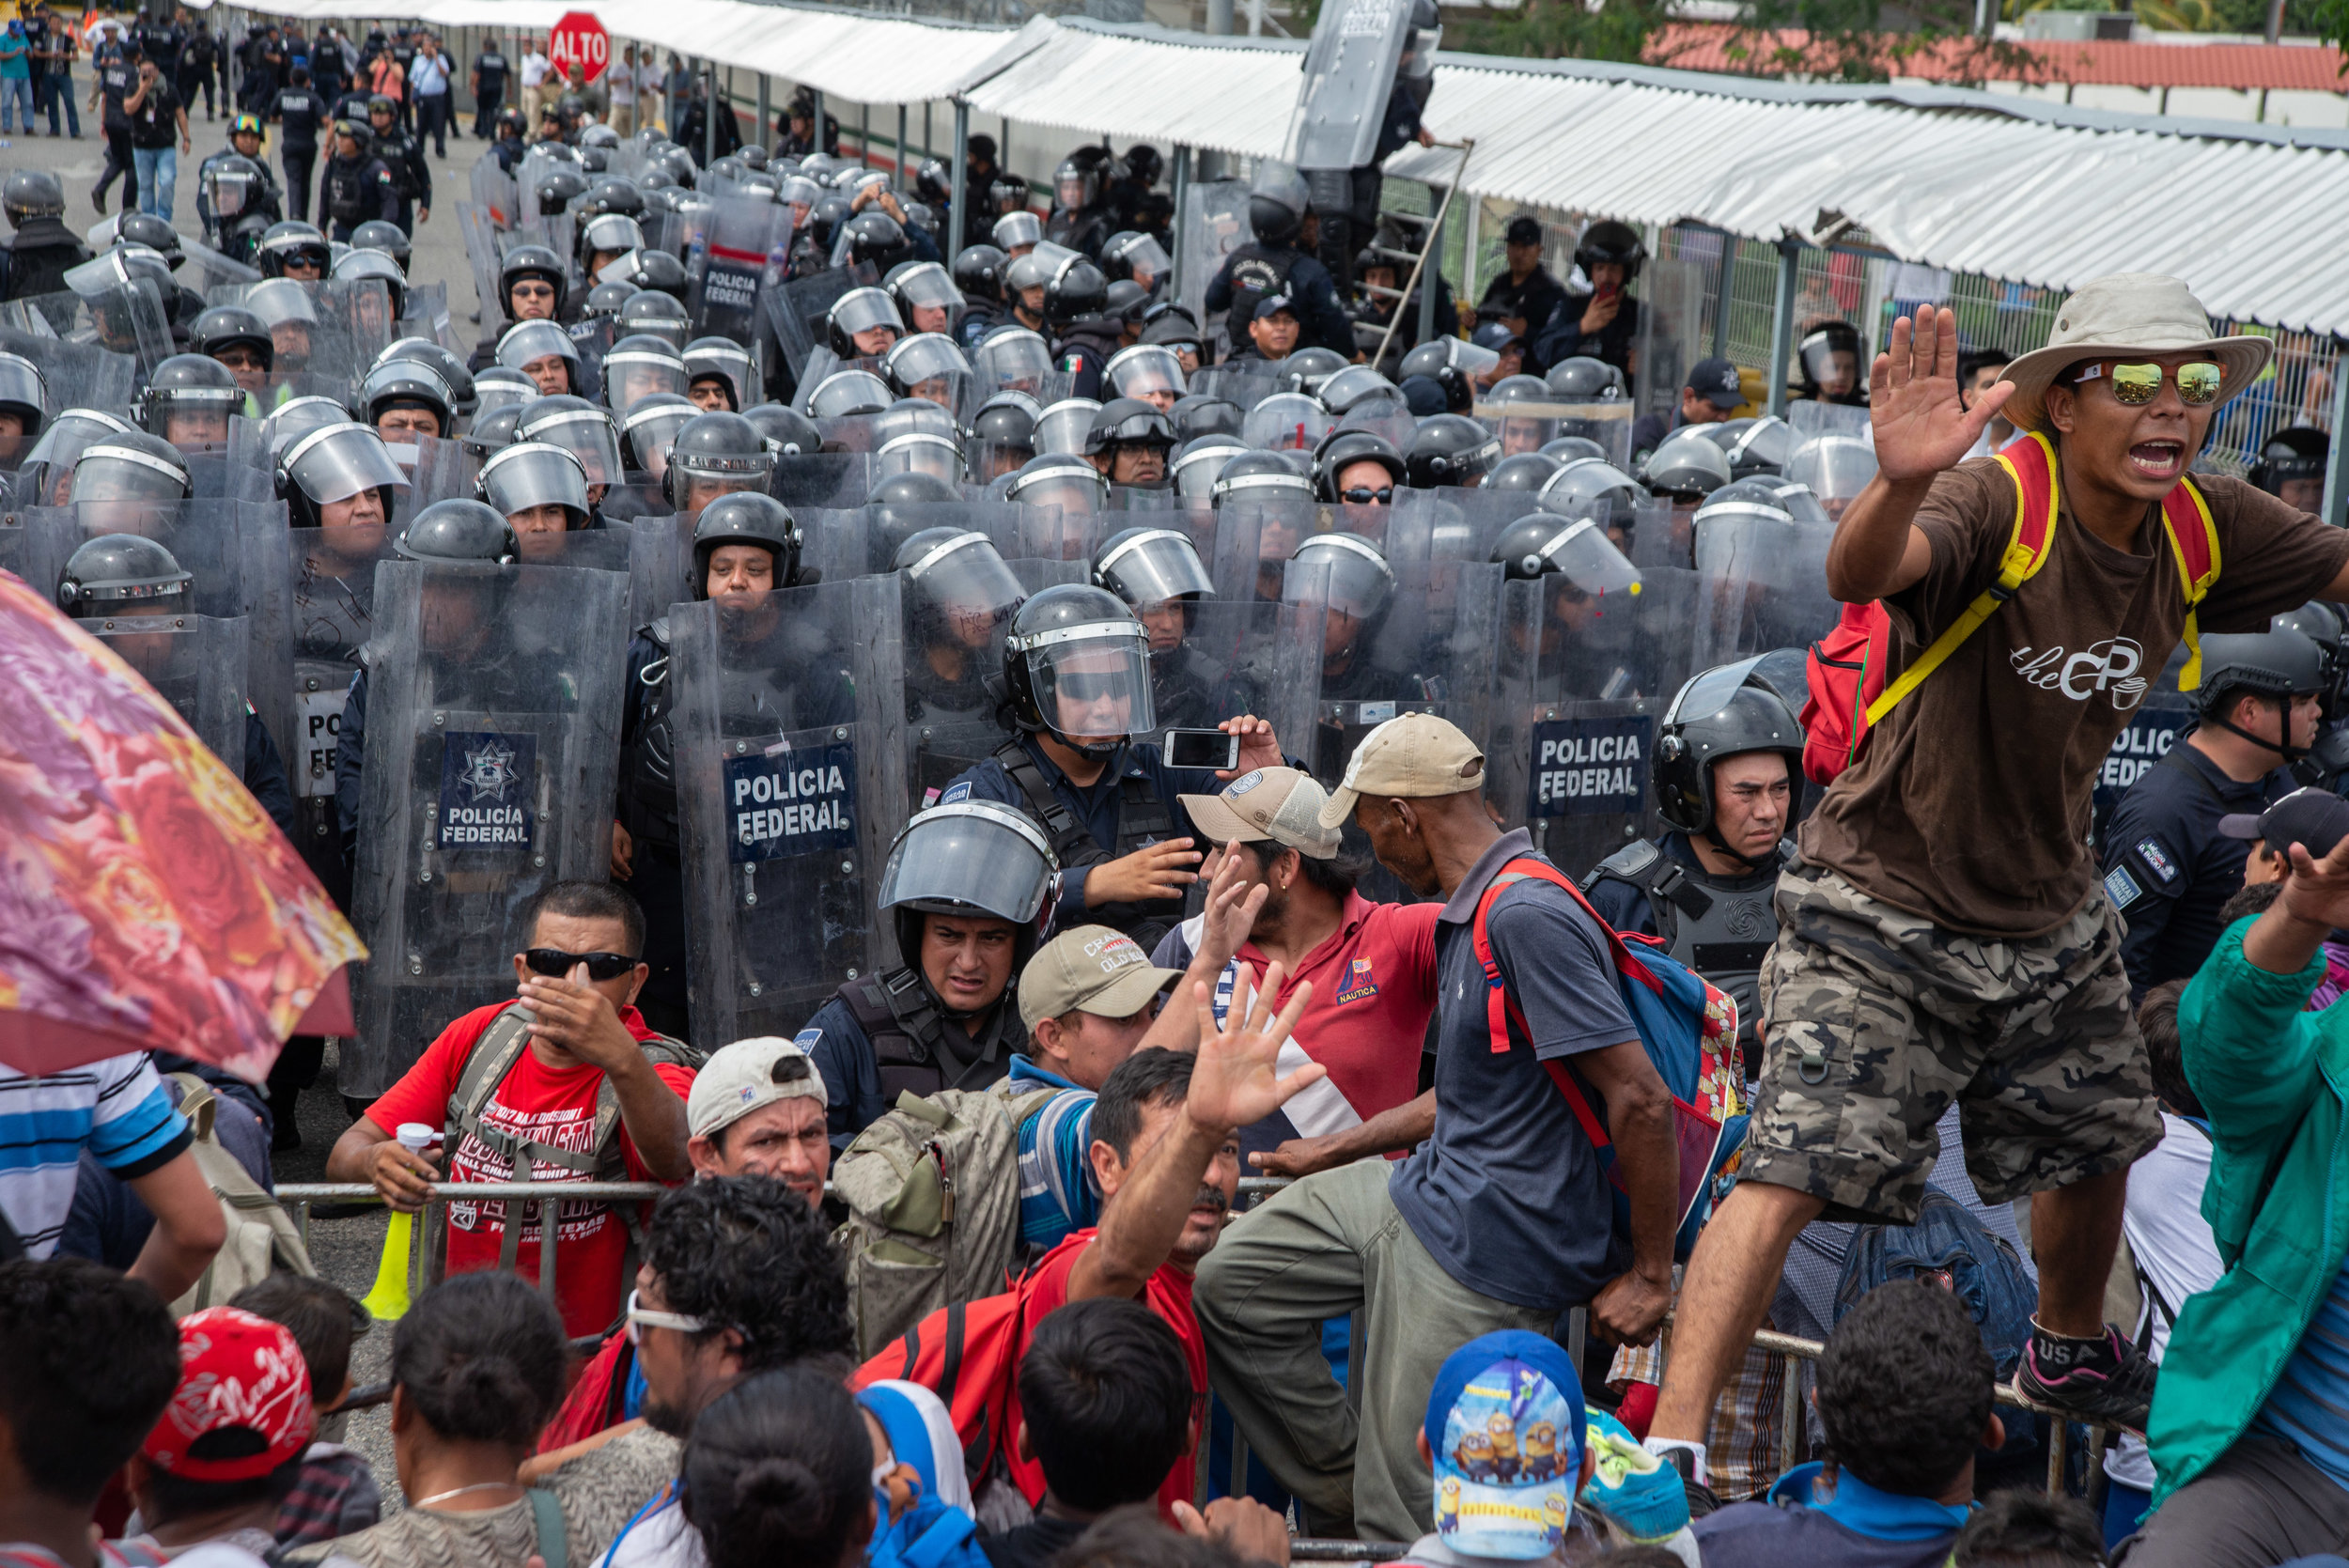  La recepción de la caravana migrante. | The reception of the migrant caravan by Mexican authorities. 